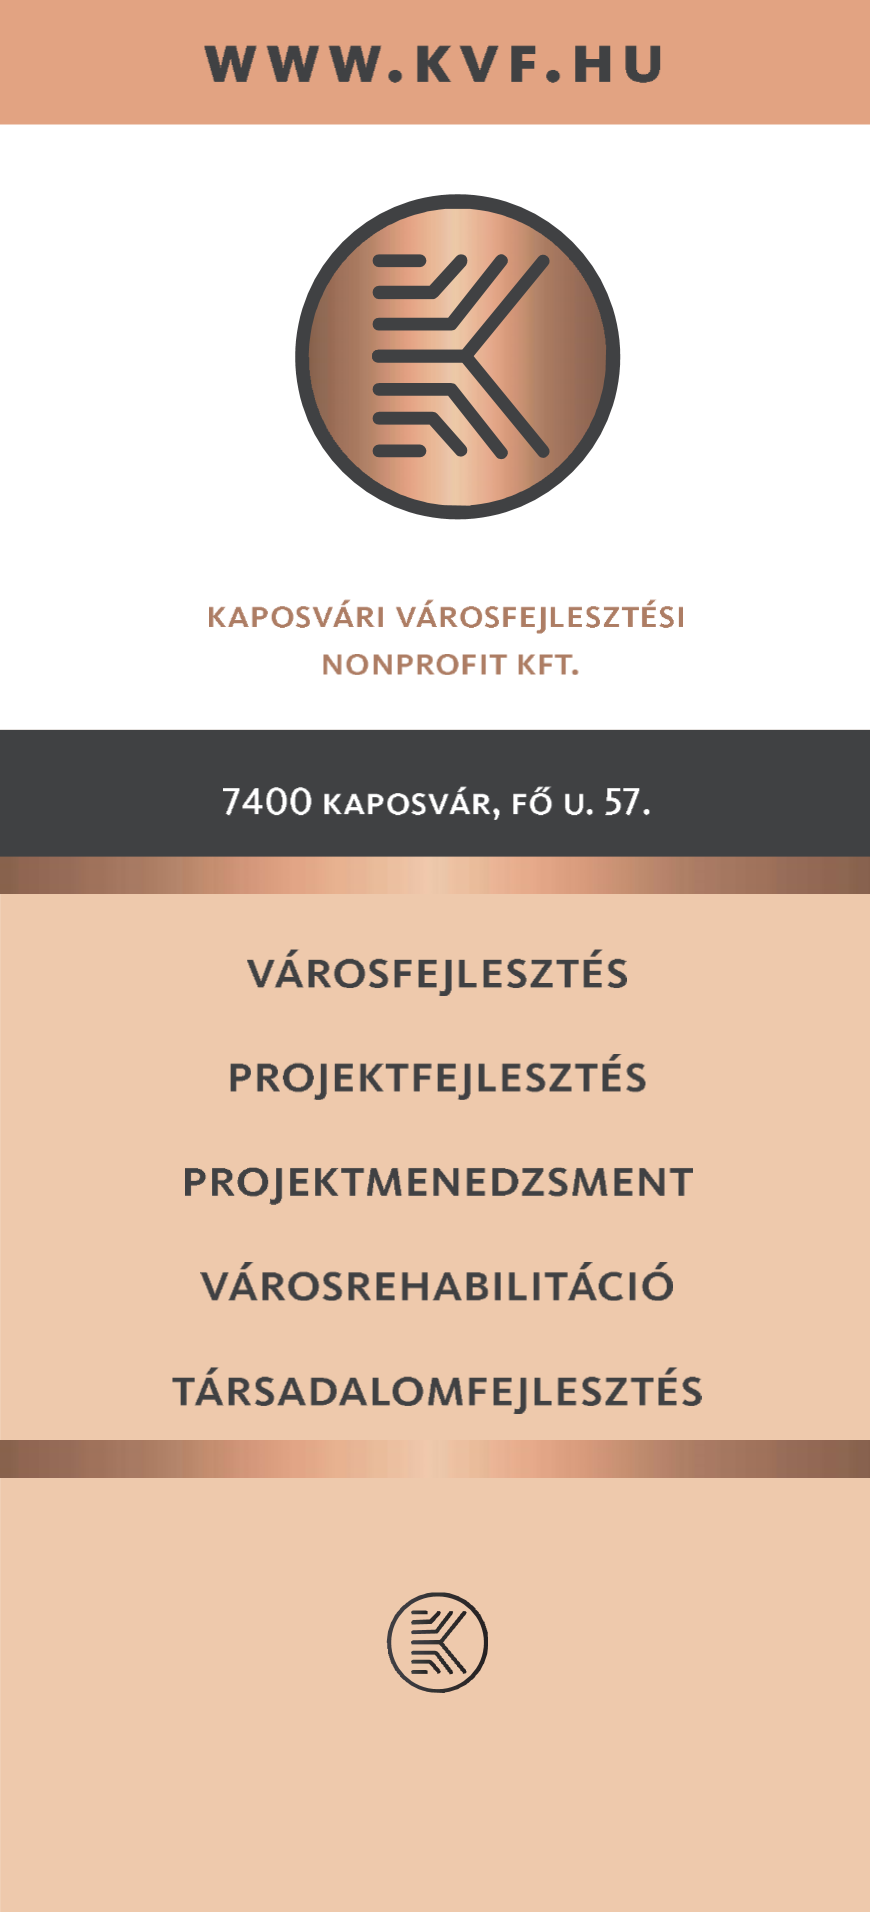 Kaposvári Városfejlesztési Nonprofit Kft.